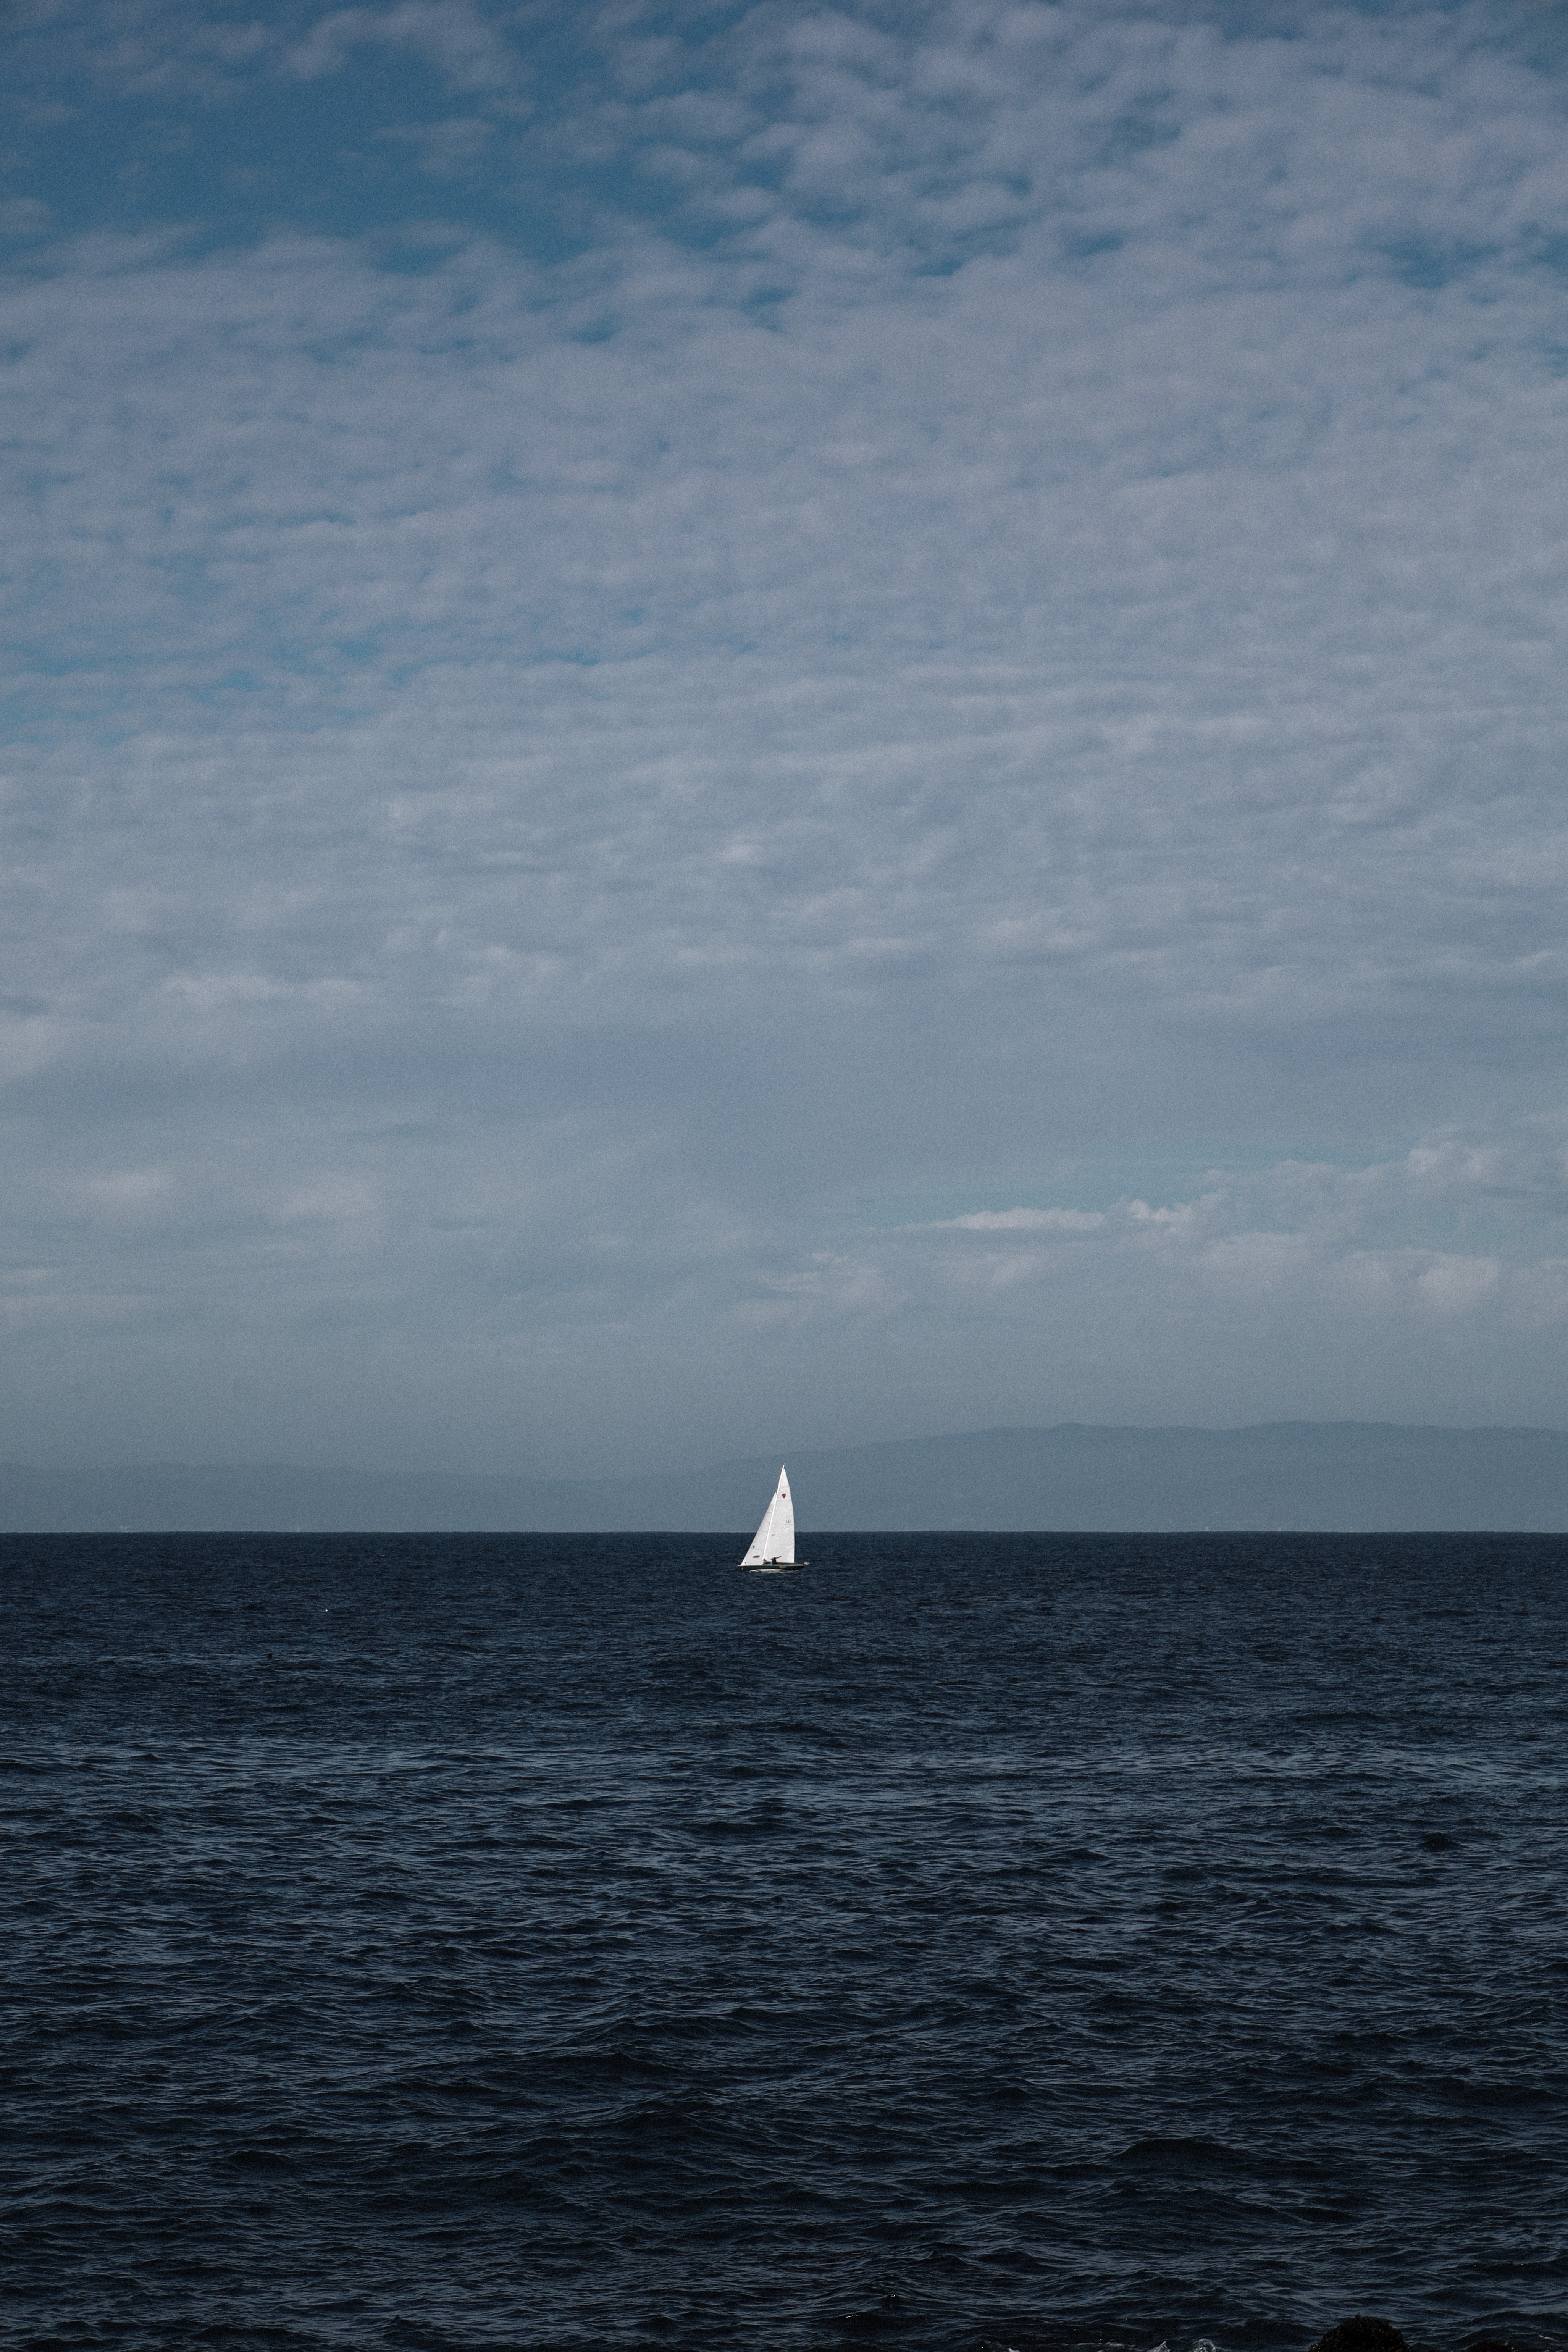 water, sea, miscellanea, miscellaneous, boat, loneliness, sailboat, sailfish